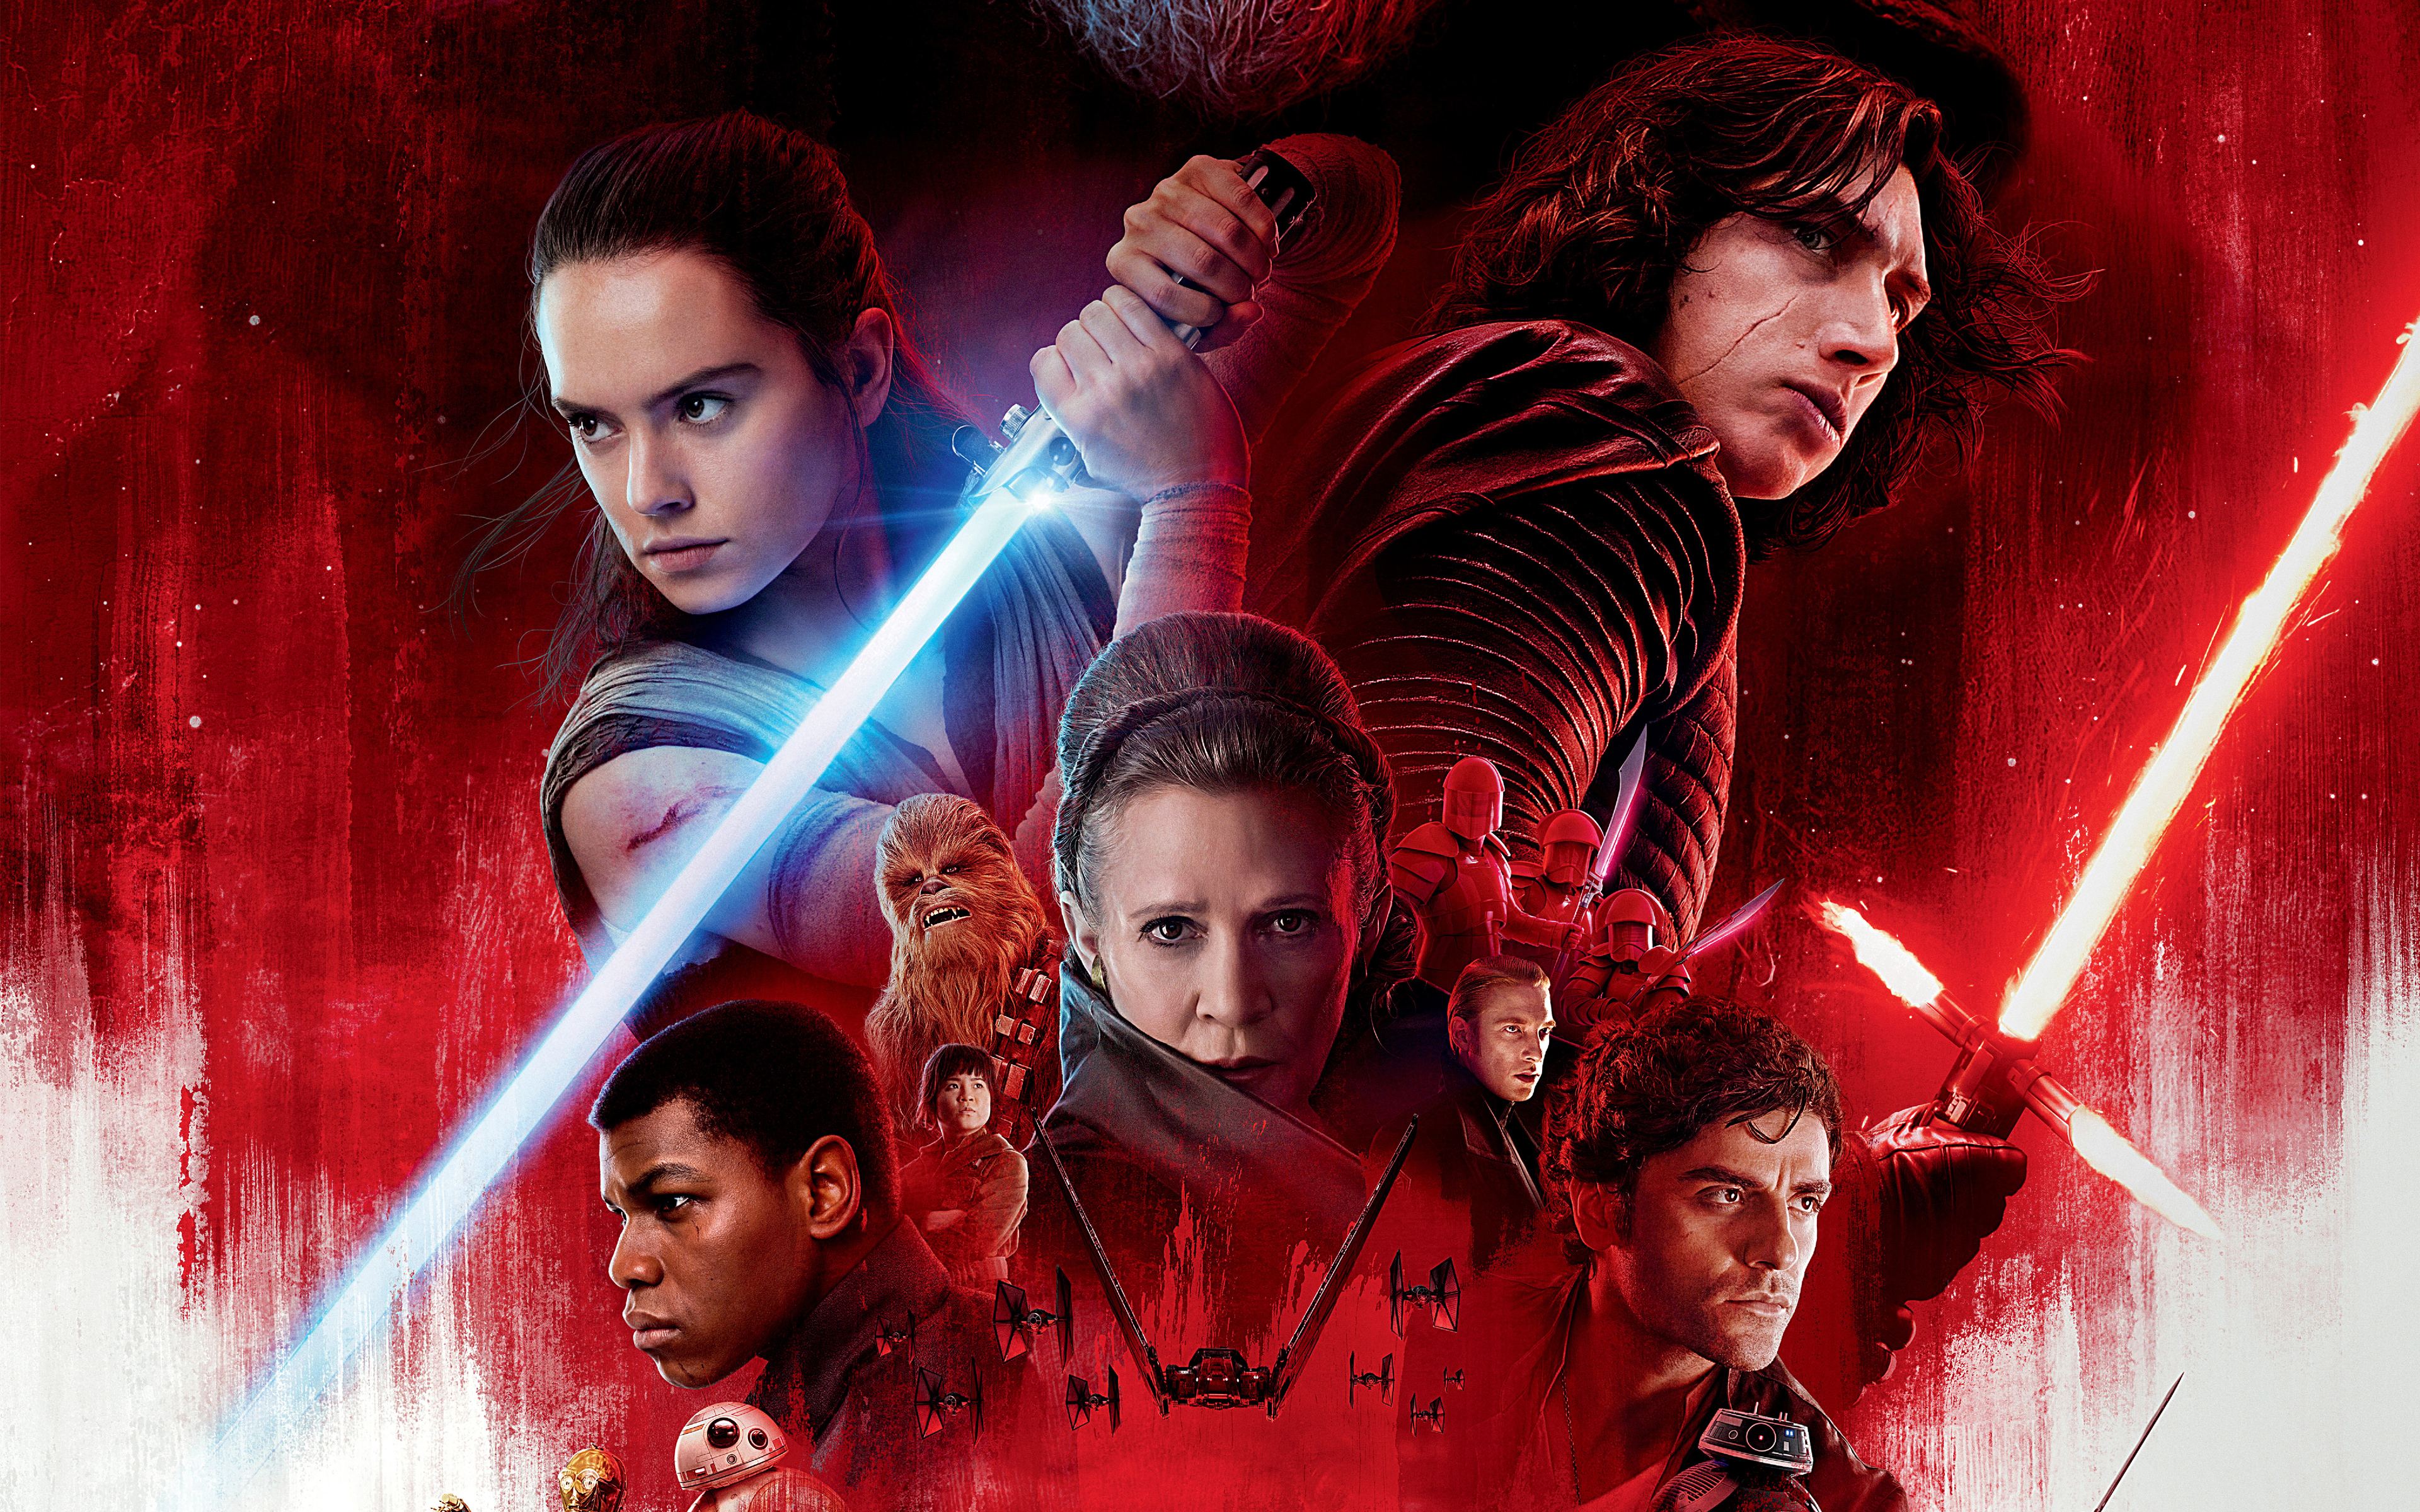 Meilleurs fonds d'écran Star Wars Épisode Viii : Les Derniers Jedi pour l'écran du téléphone